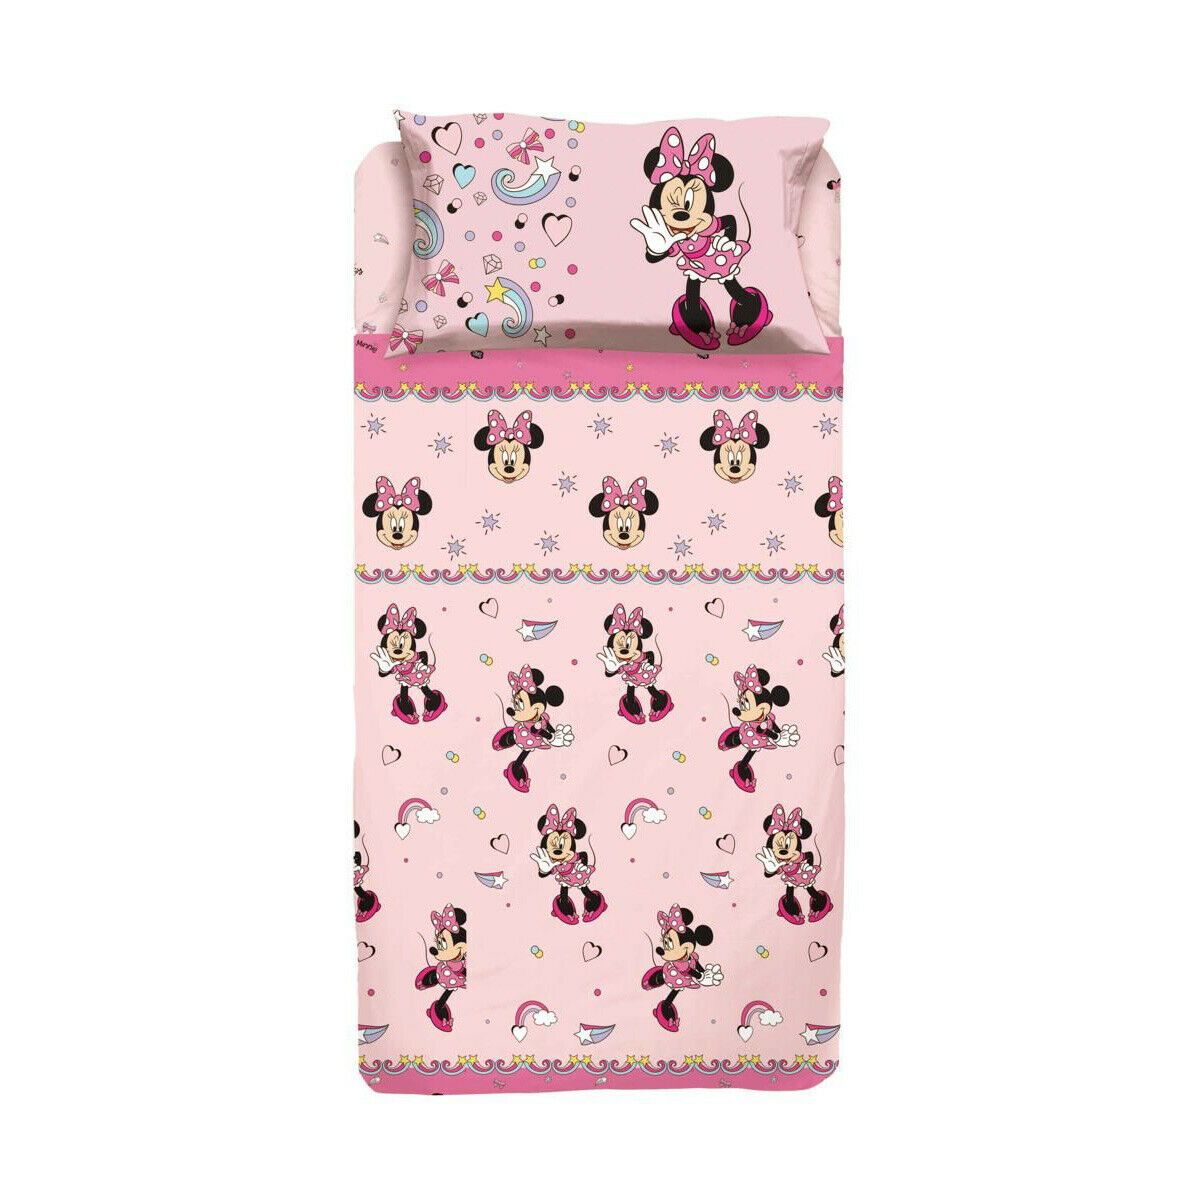 Completo lenzuola Minnie Mouse Disney per letto Singolo K011